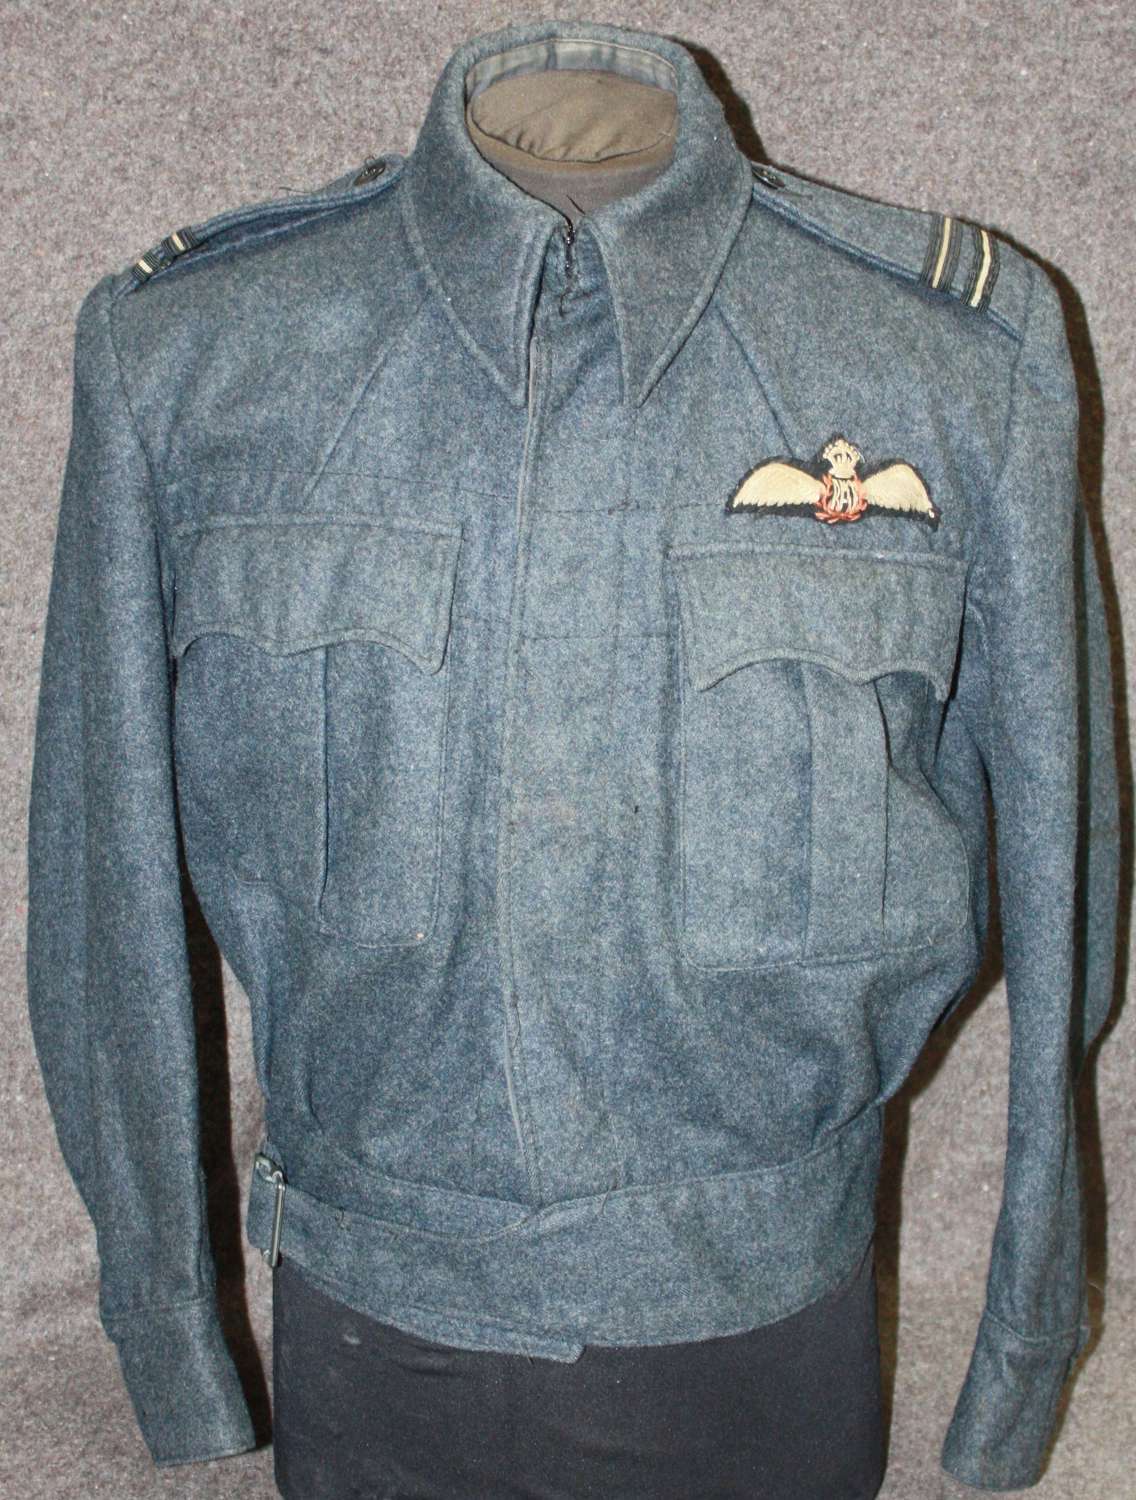 A RAF PILOTS SUITS AIR CREW BATTLE DRESS JACKET 1943 DATED  / BLOUSE